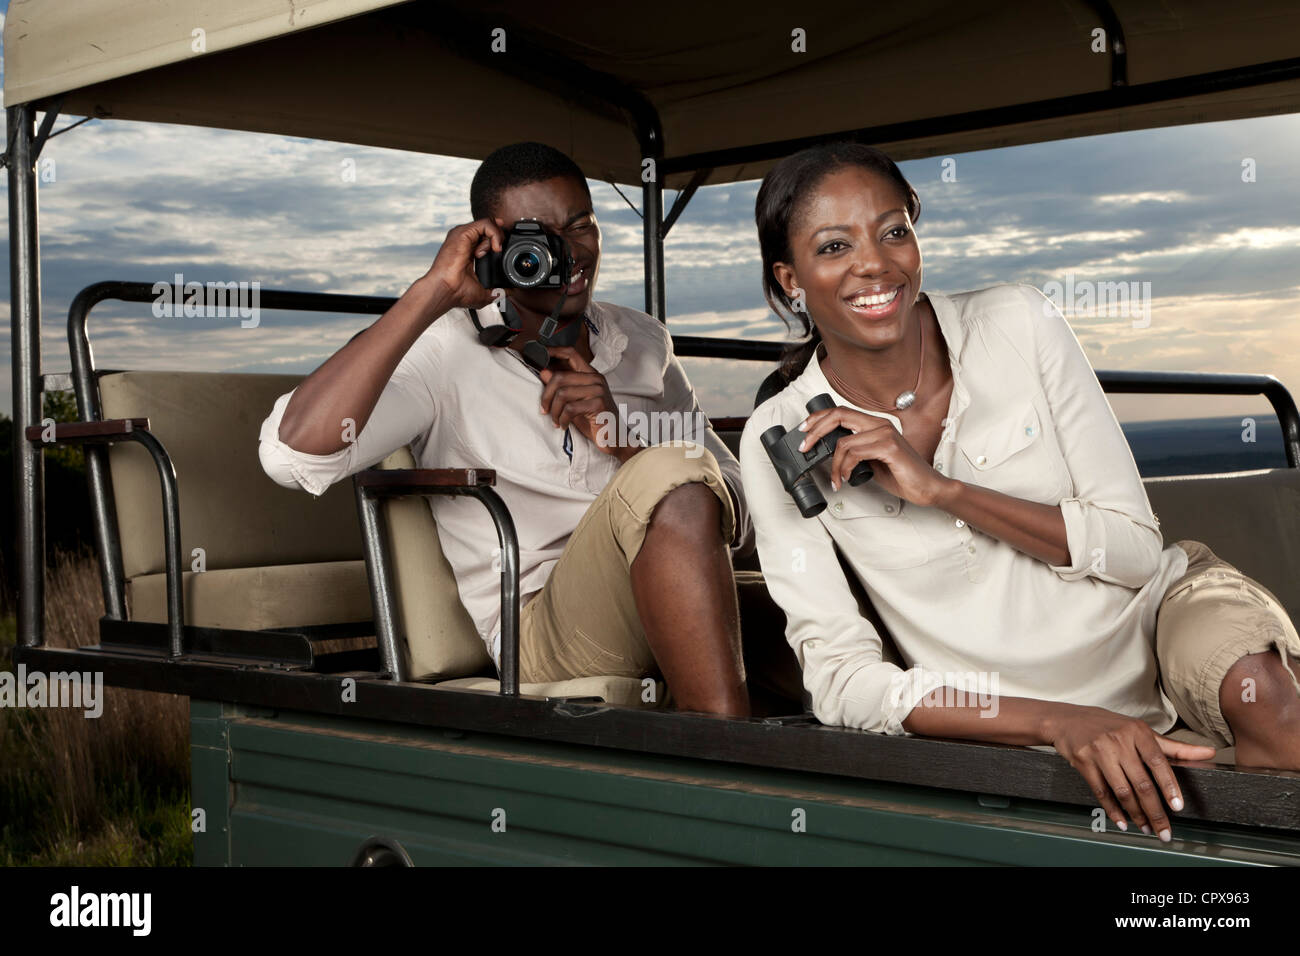 Una pareja africana sentados en un juego de visualización vehículo buscando animales y tomar fotografías Foto de stock